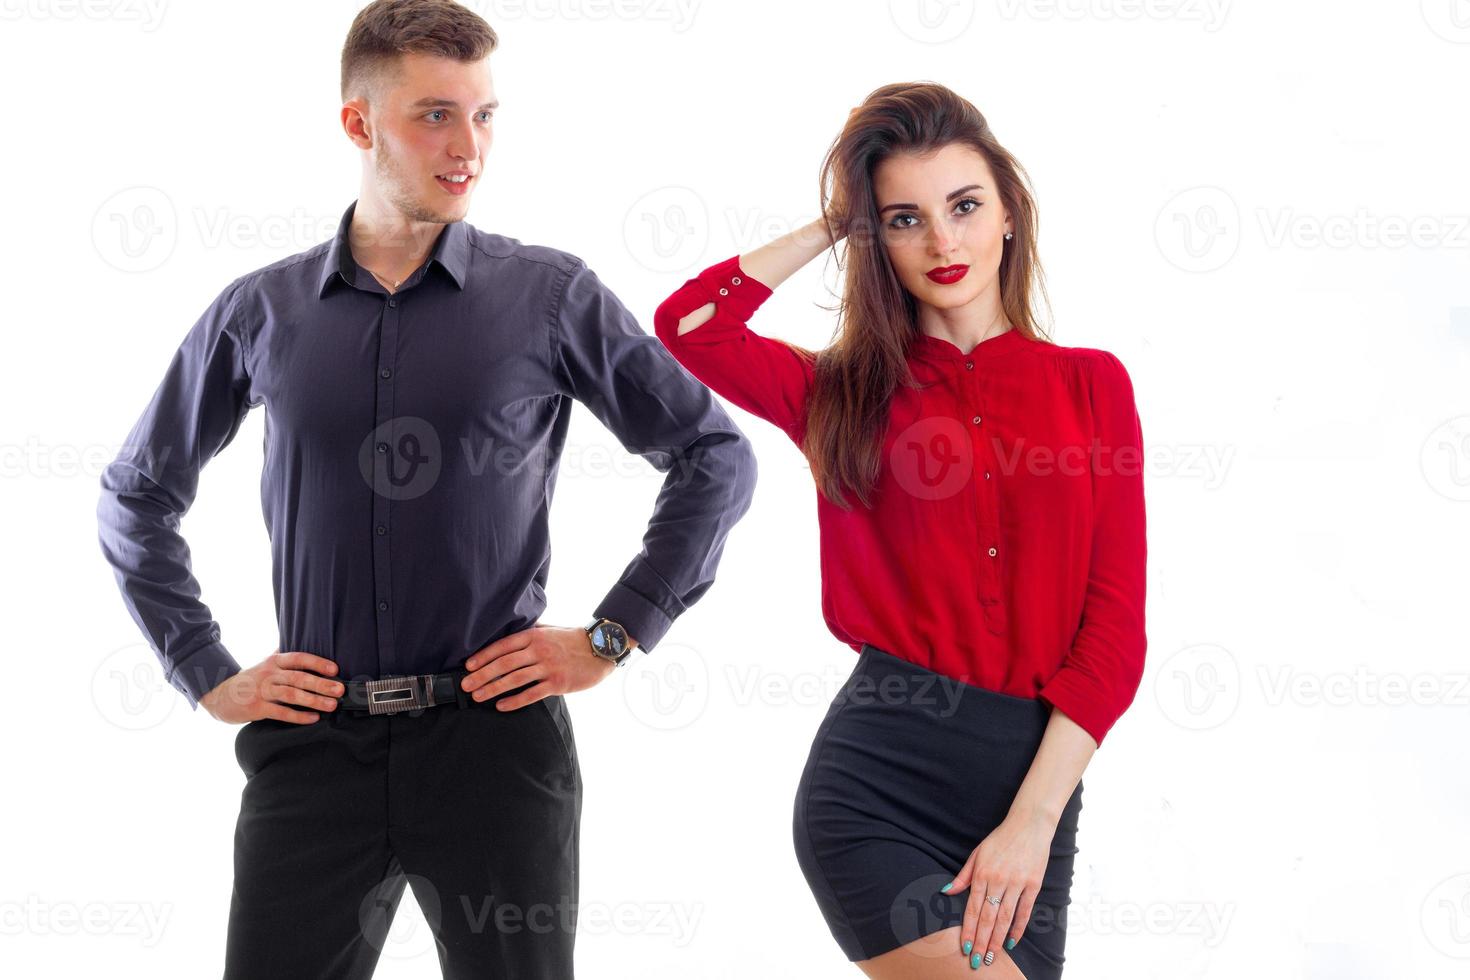 jovem romântica em uma blusa vermelha e com batom nos lábios fica perto de um cara alto que olha para ela foto